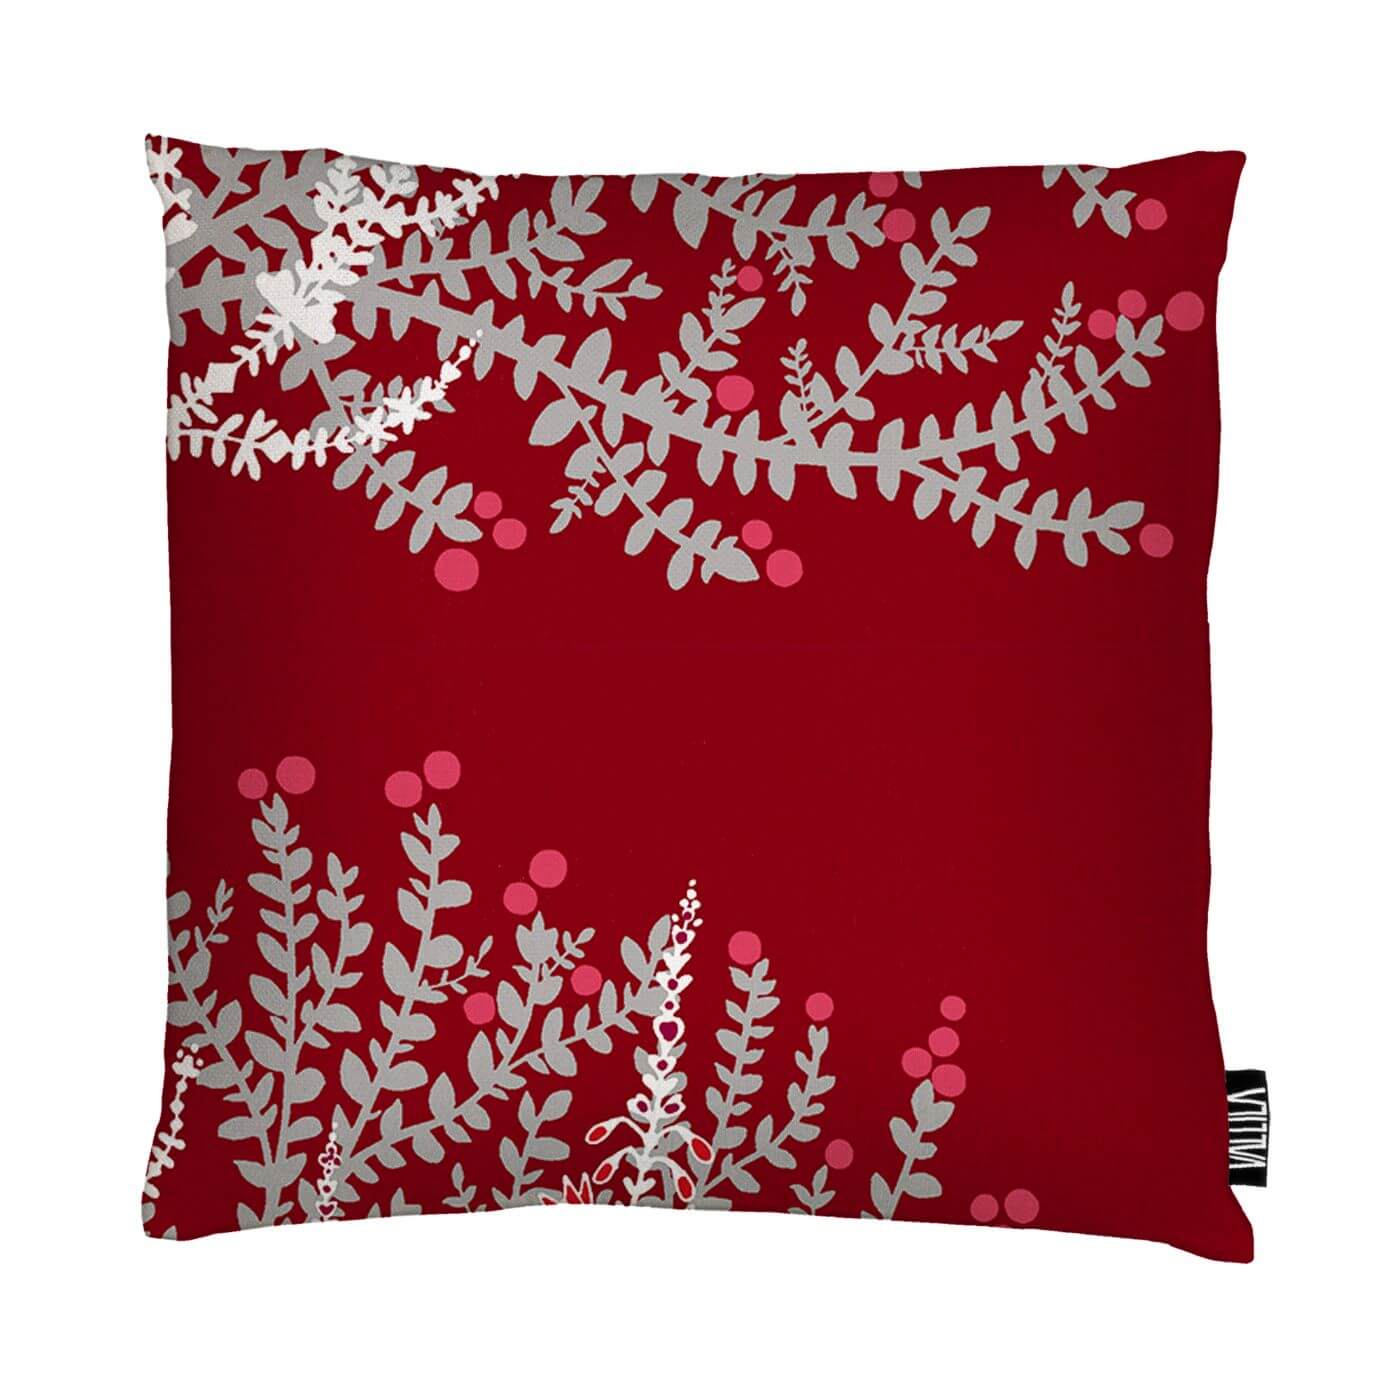 Czerwona poszewka dekoracyjna VARVIKKO. Widoczna w całości poszewka czerwona na poduszkę z dekoracyjnym srebrno białym wzorem inspirowanym florą skandynawskich lasów. Skandynawski design